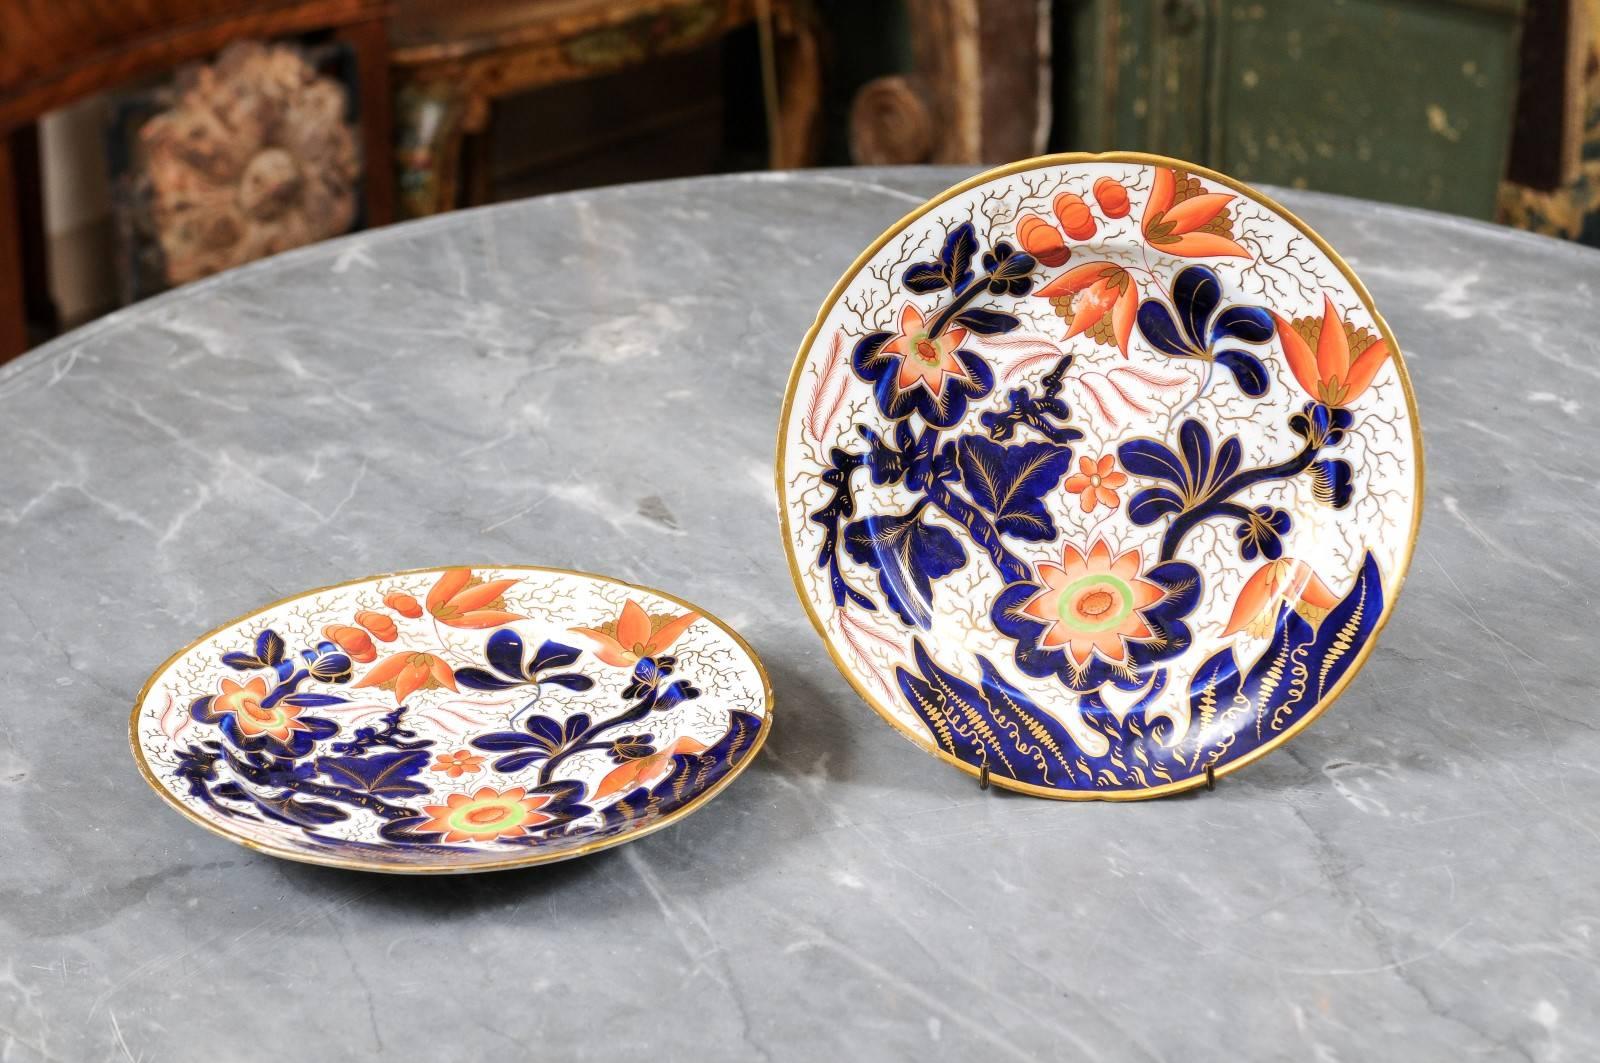 Paar große Teller aus Coalport-Porzellan mit vergoldetem Rand und Akzenten, Blumendekor in Blau-, Rot- und Grüntönen. 19. Jahrhundert England. Der Preis gilt für ein Paar Teller.